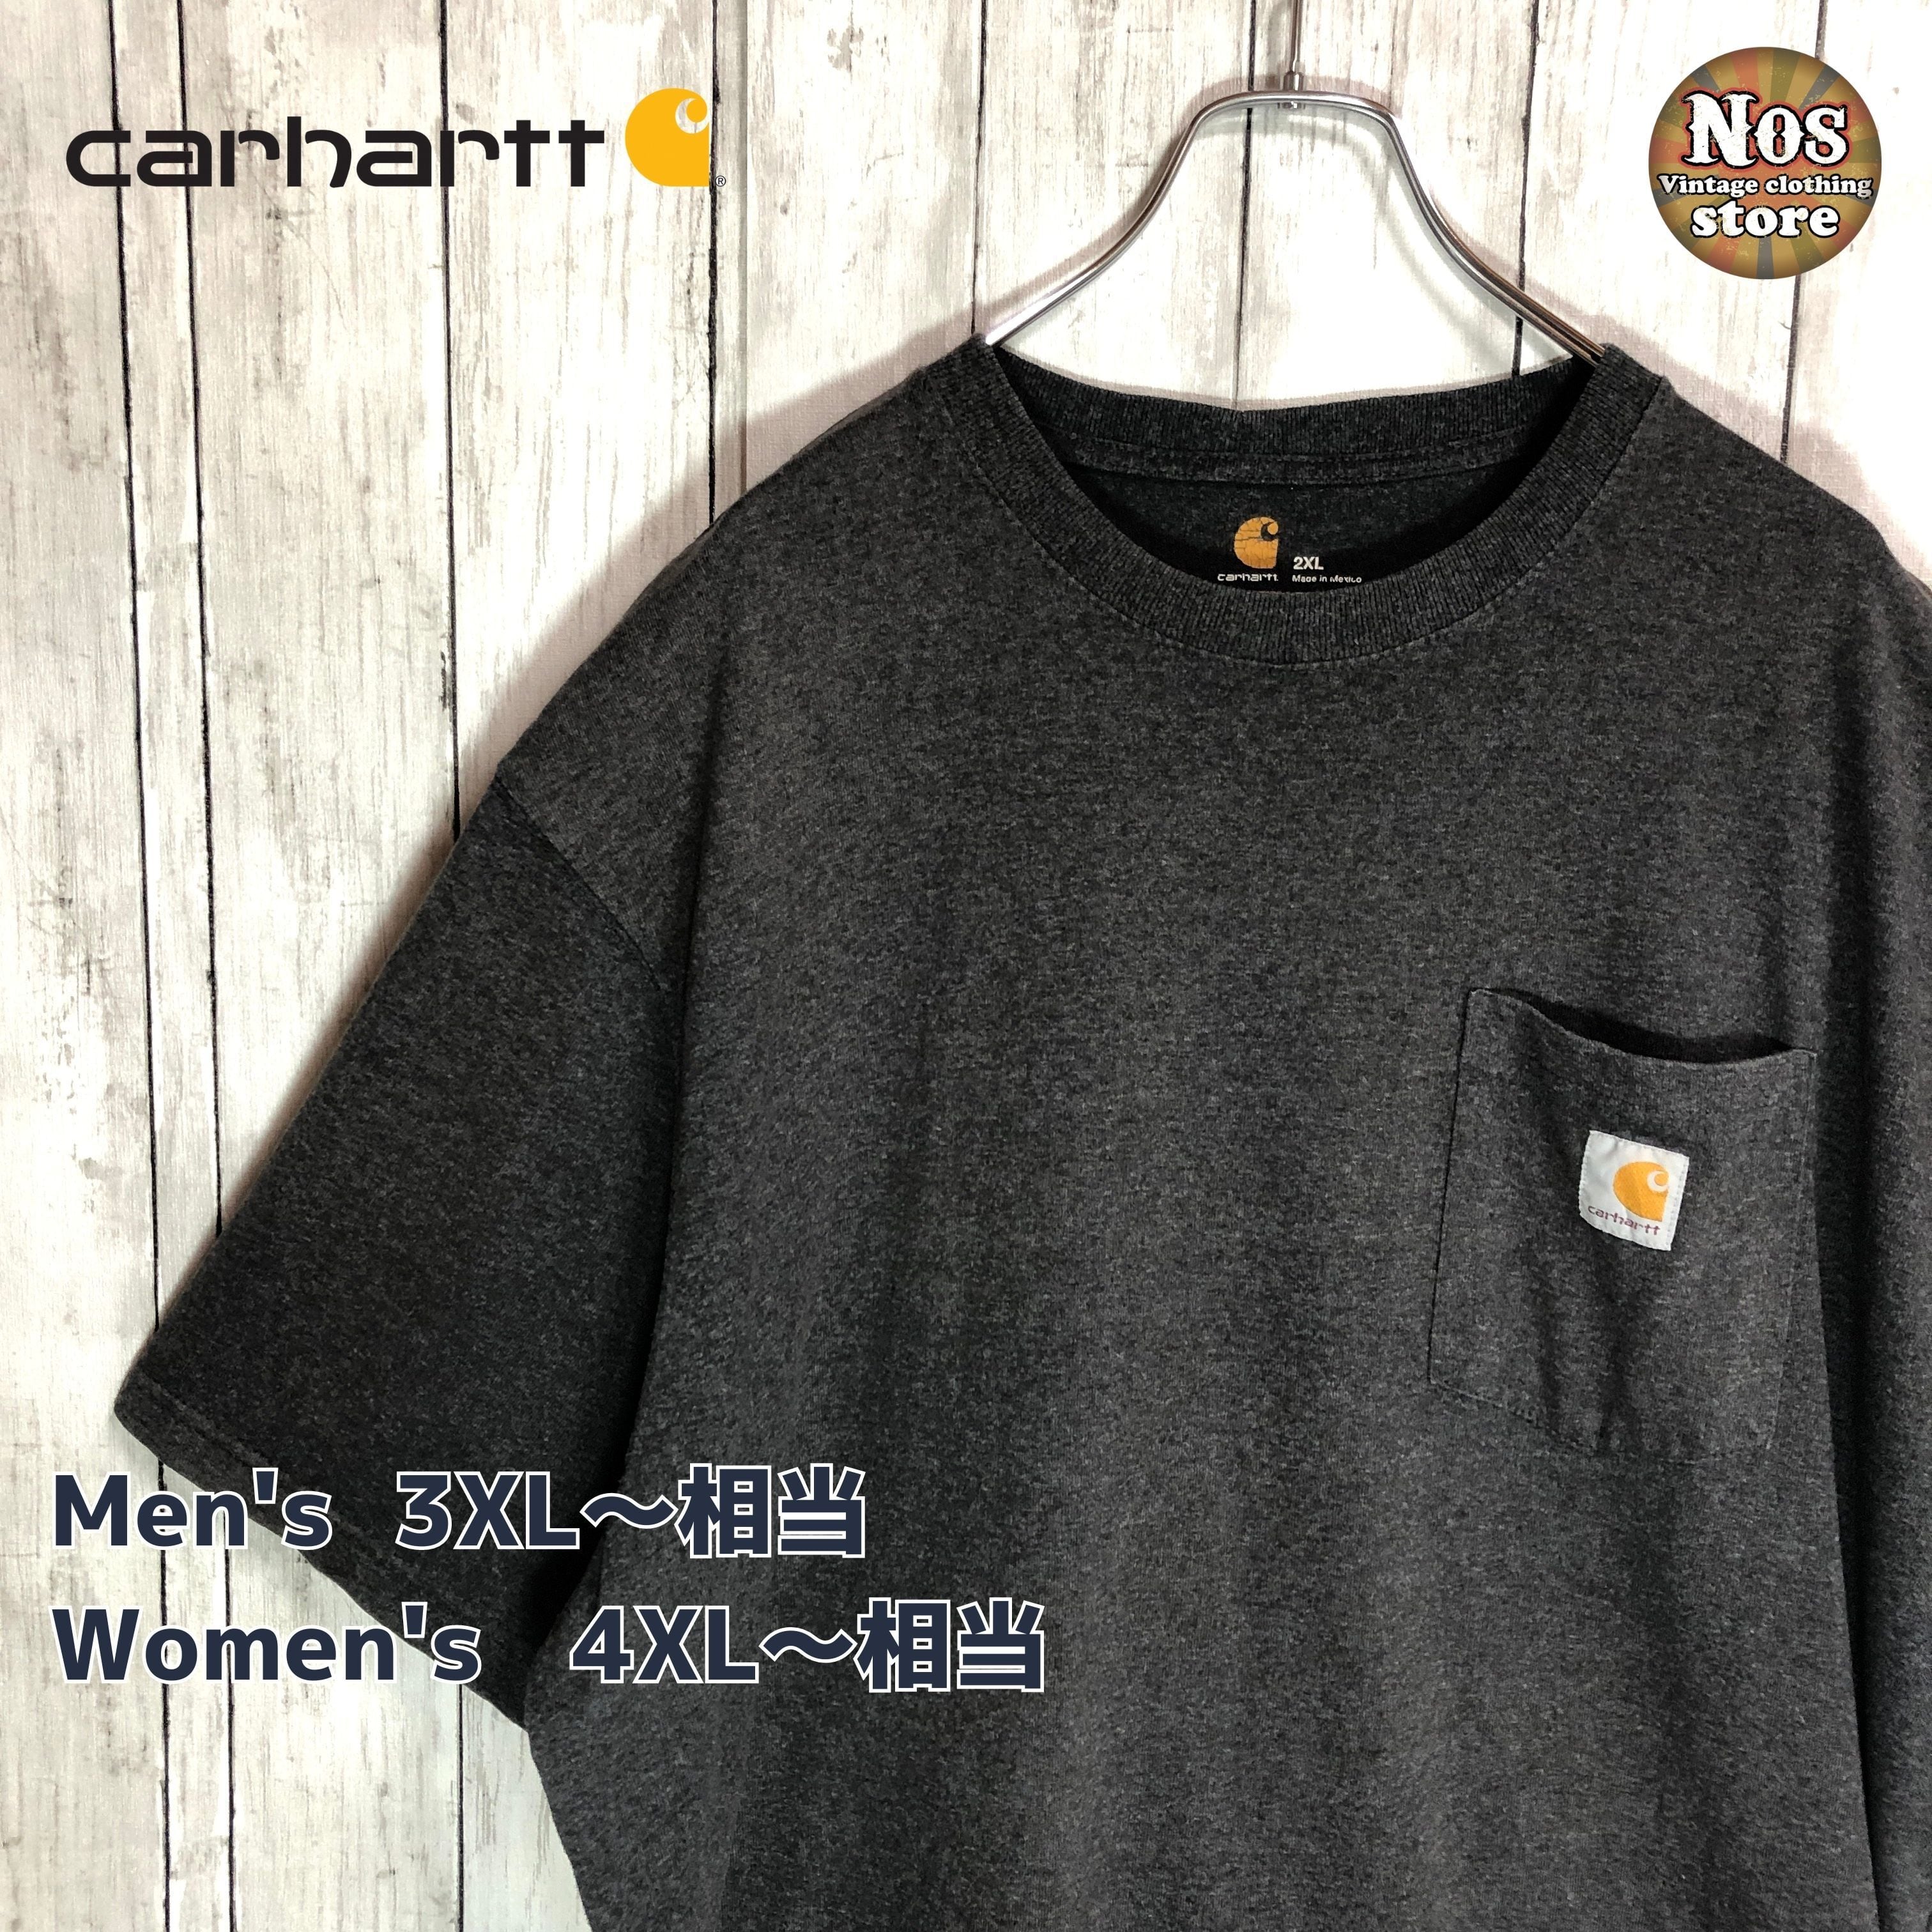 【メキシコ製】カーハート Carhartt Tシャツ ワンポイント ロゴ | 古着館Nos